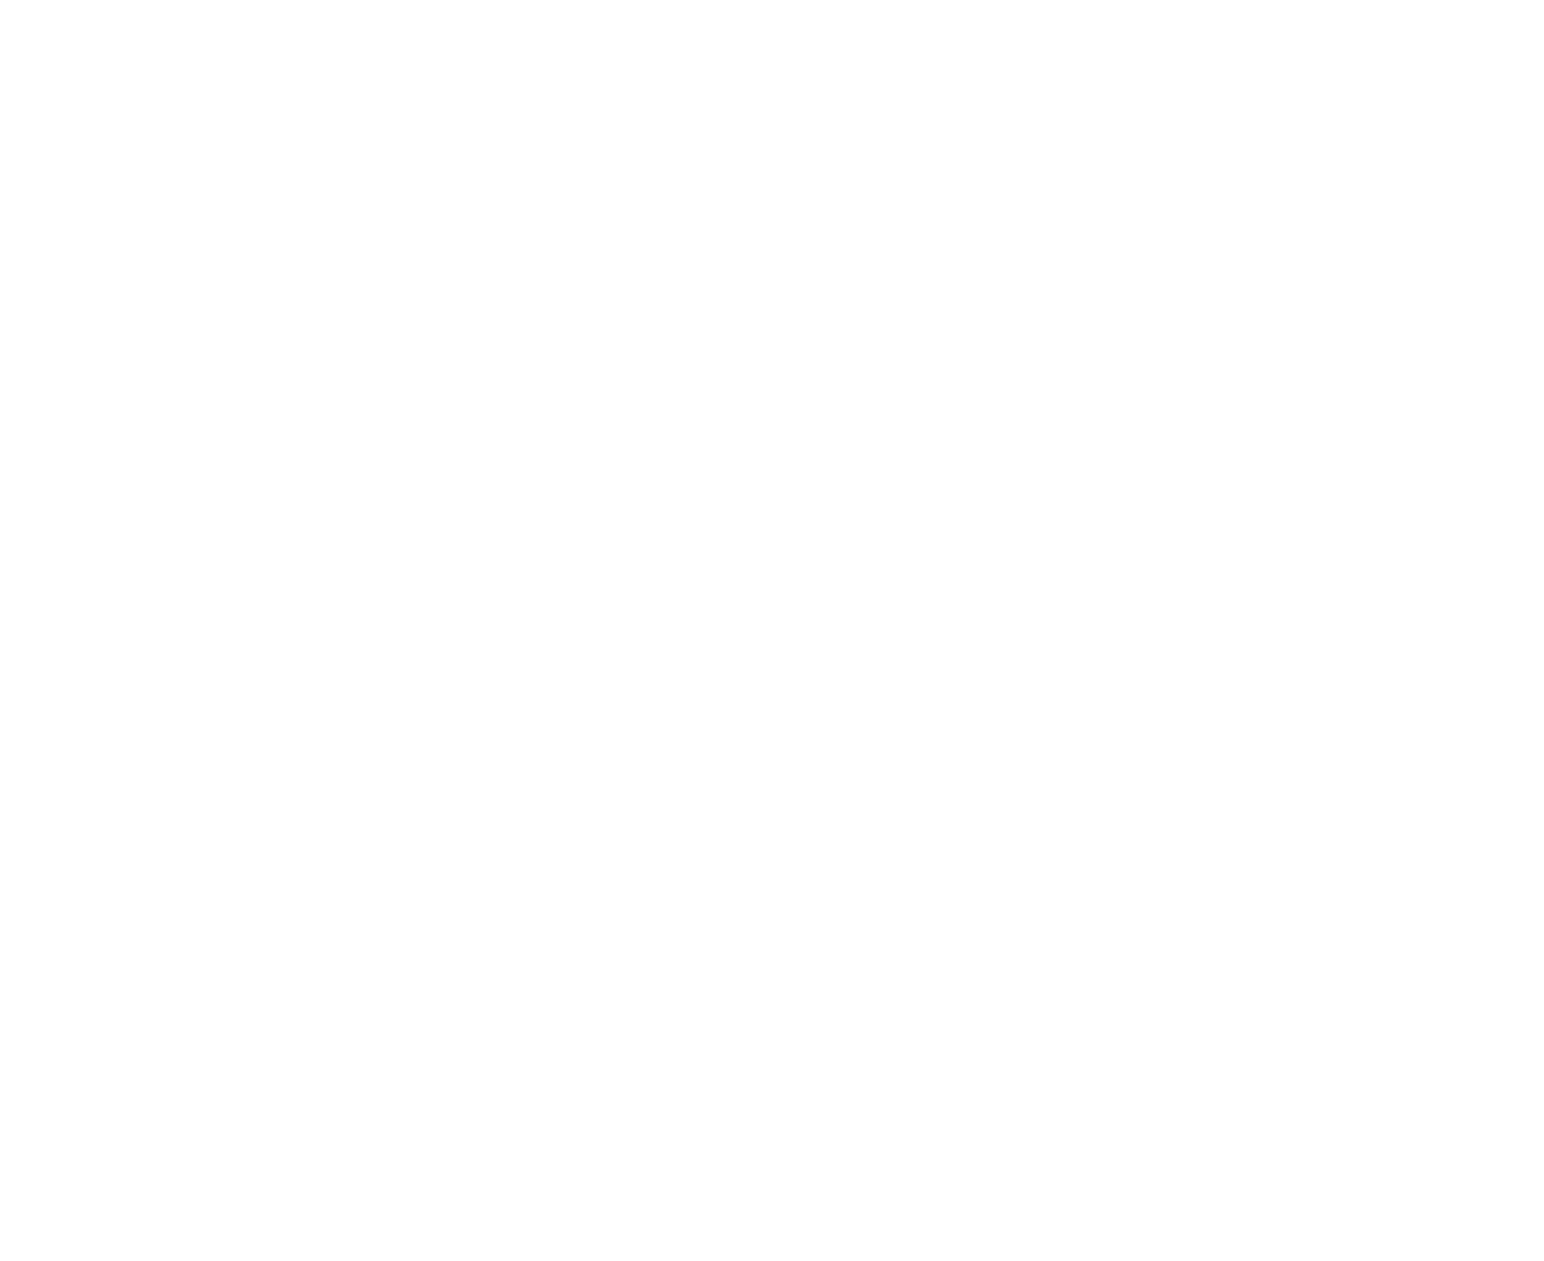 City Cement Company logo pour fonds sombres (PNG transparent)